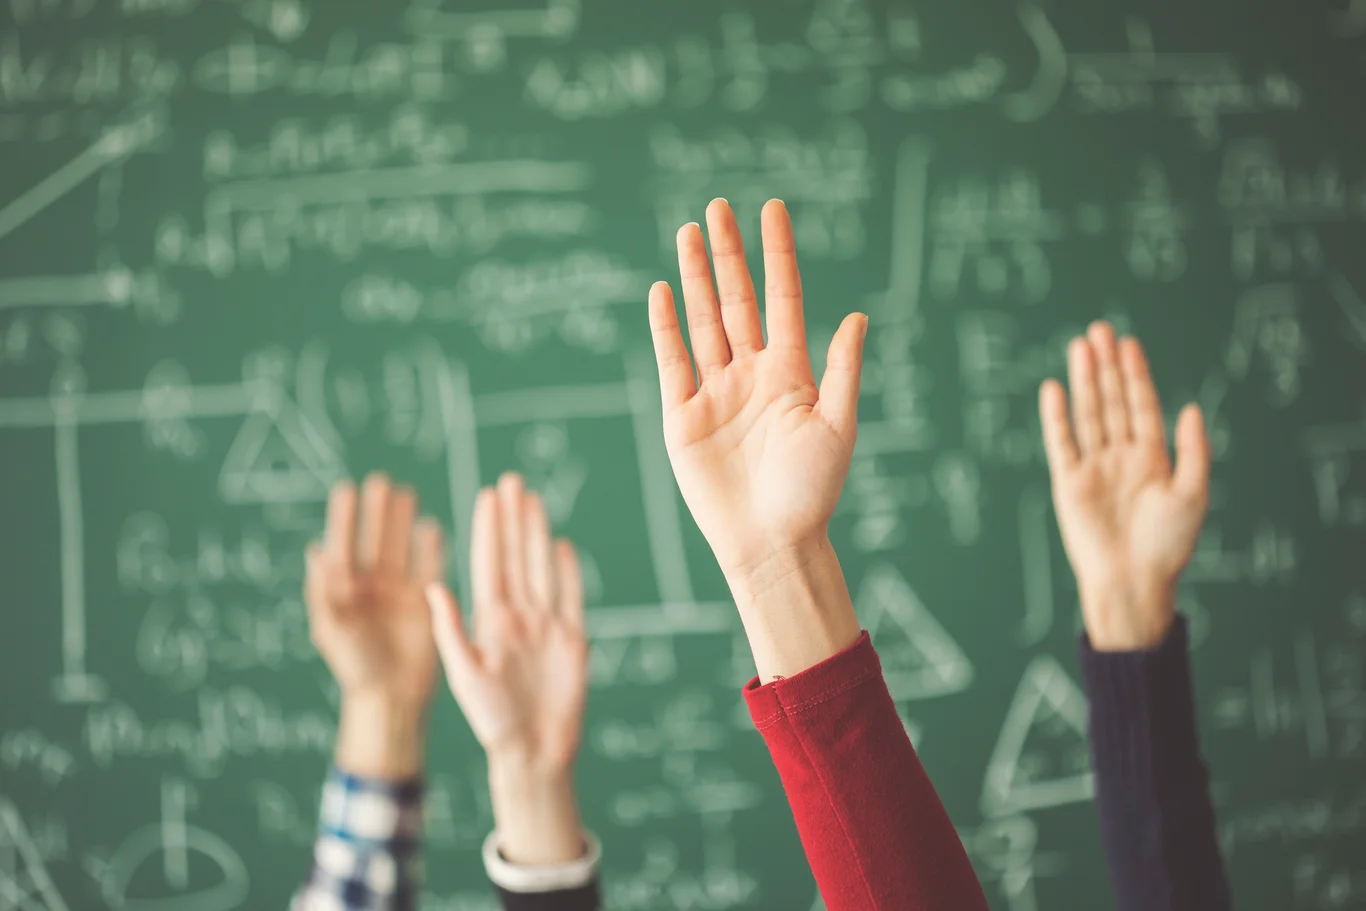 En rekke hender som holdes opp foran en tavle med matematikk skriblerier